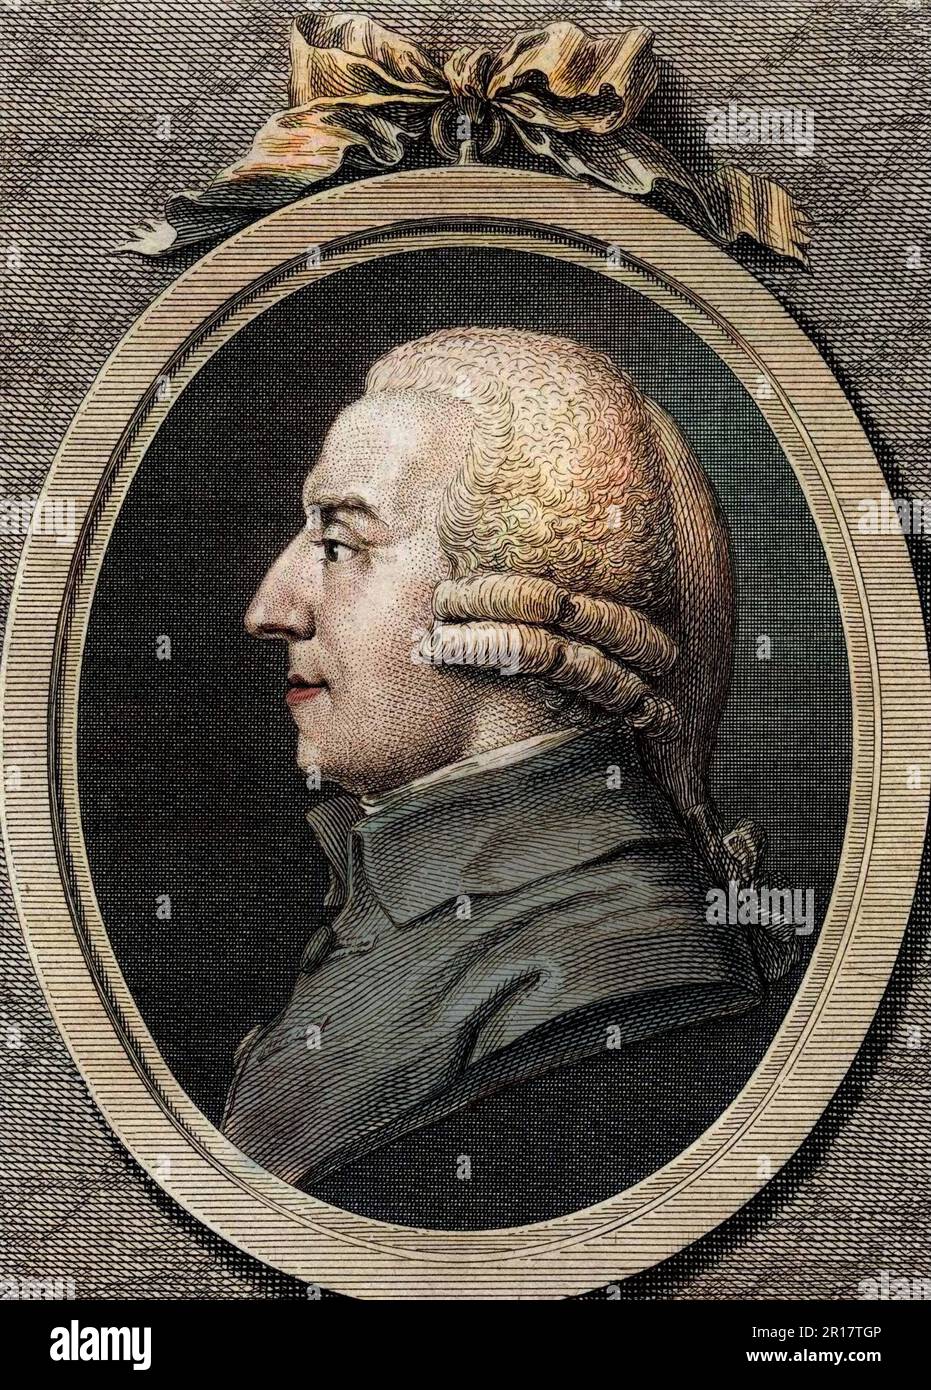 Portrait d'Adam Smith (1723 - 1790), philosophe et économiste écossais. Gravure du 19eme siecle. Stock Photo